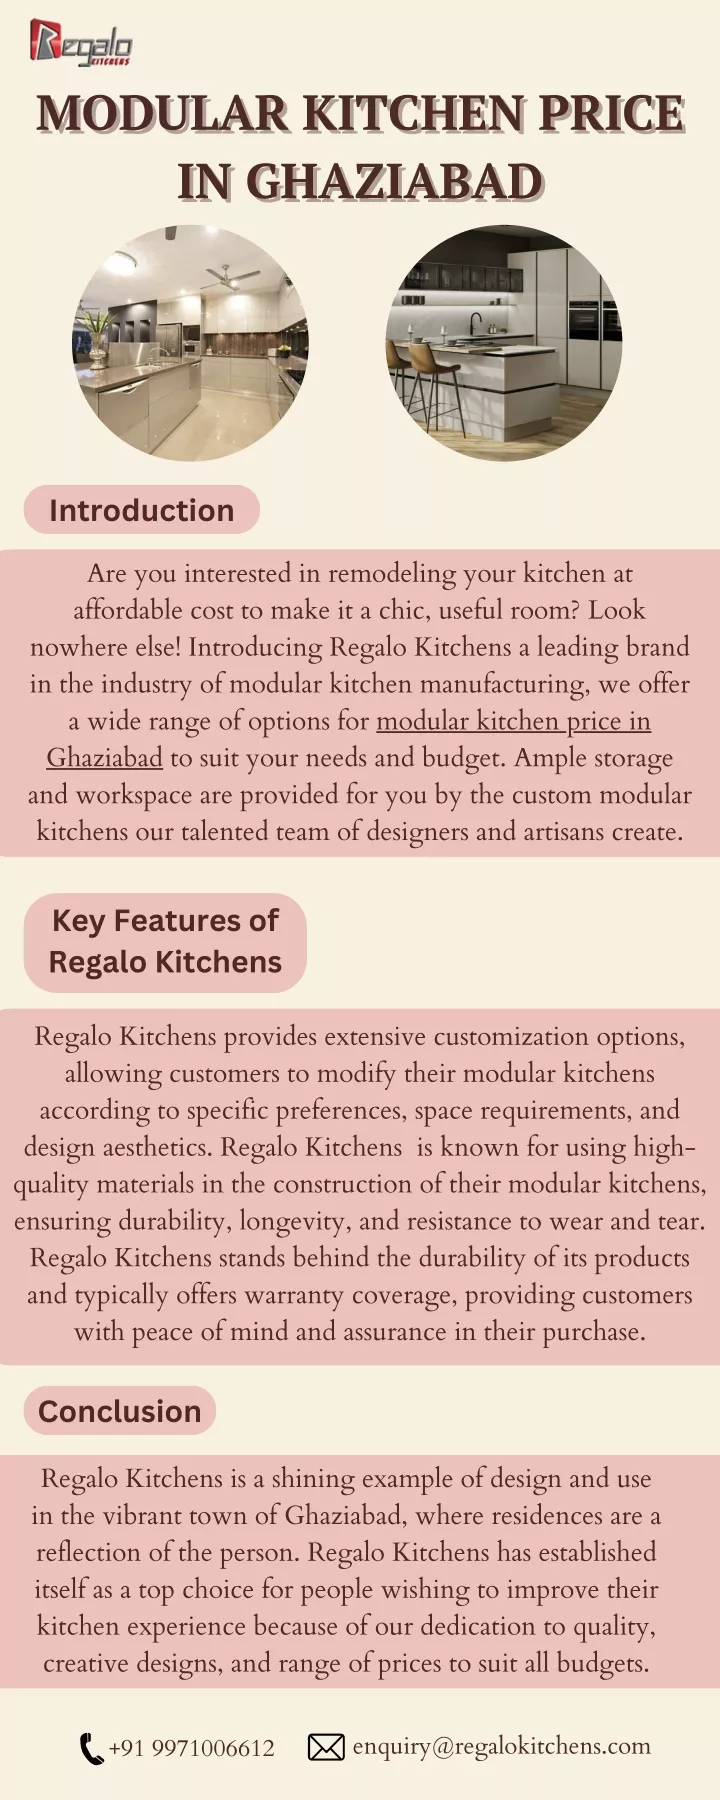 modular kitchen price modular kitchen price